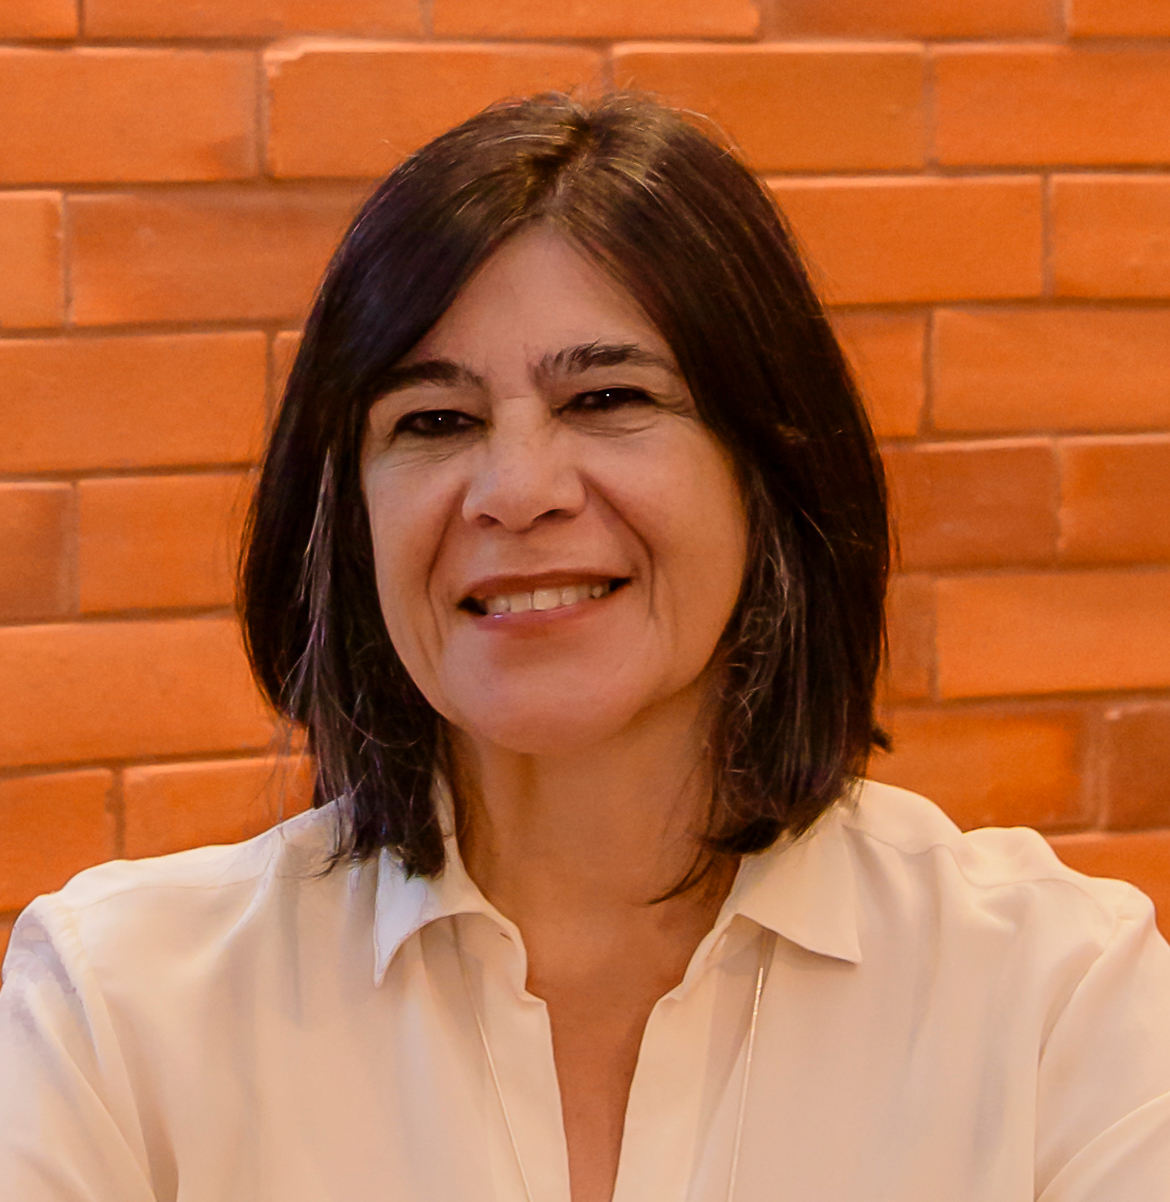 Imagem de perfil do pesquisador Magali Romero Sá